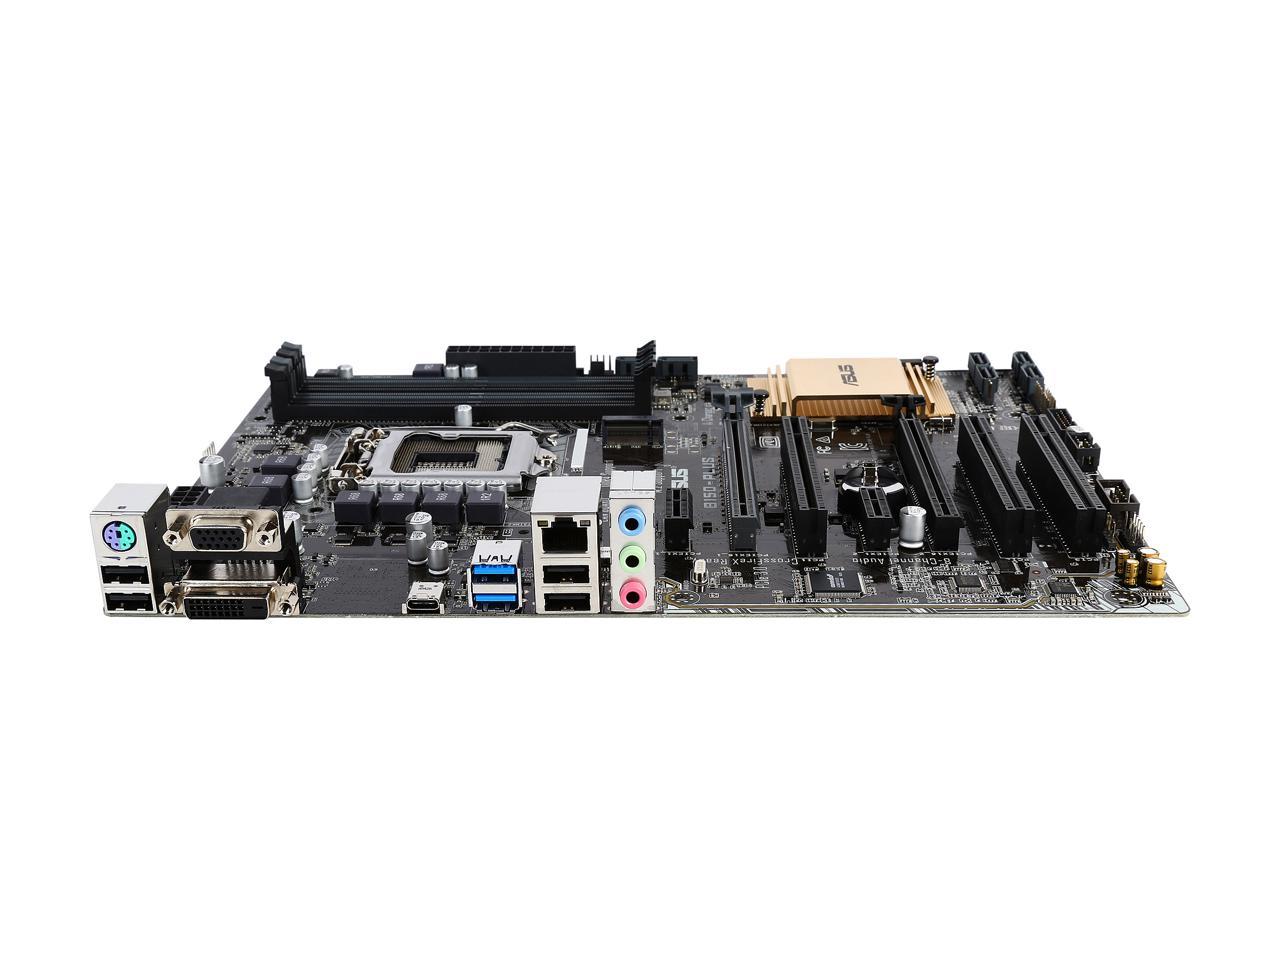 ASUS B150-PLUS LGA 1151 Intel B150 HDMI SATA 6Gb/s USB 3.0 ATX Intel Motherboard